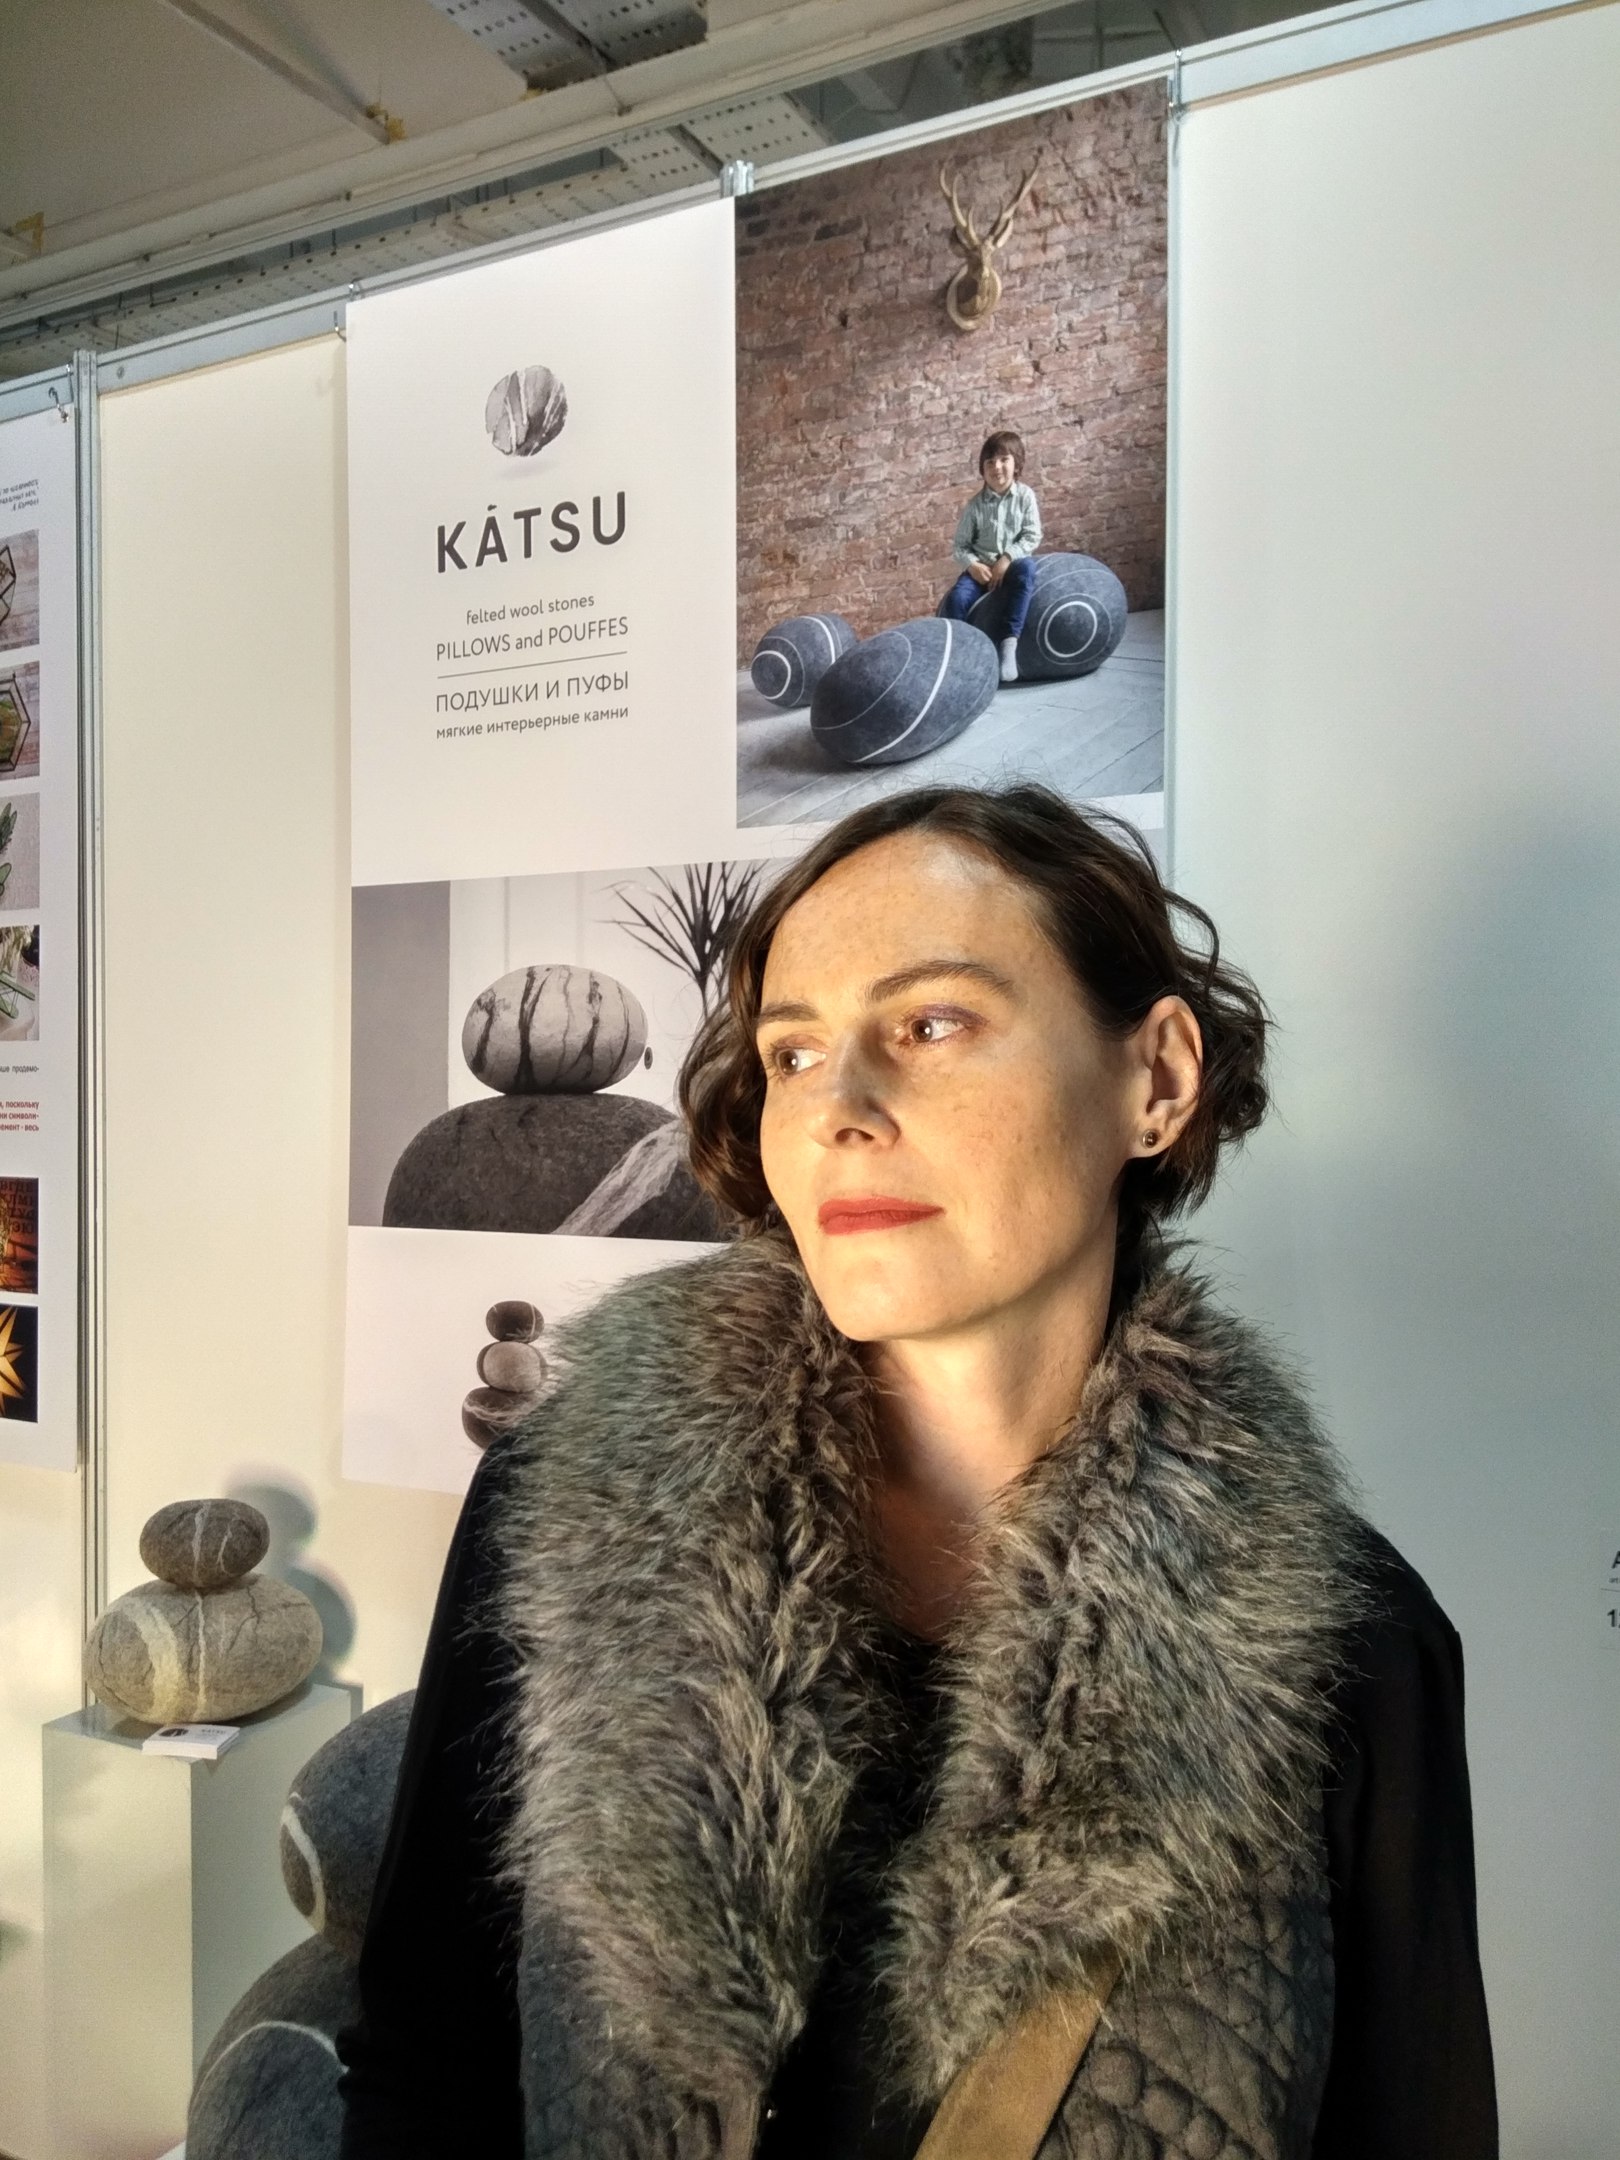 Designer of KATSU felted woolen interior stone poufs at the design biennial